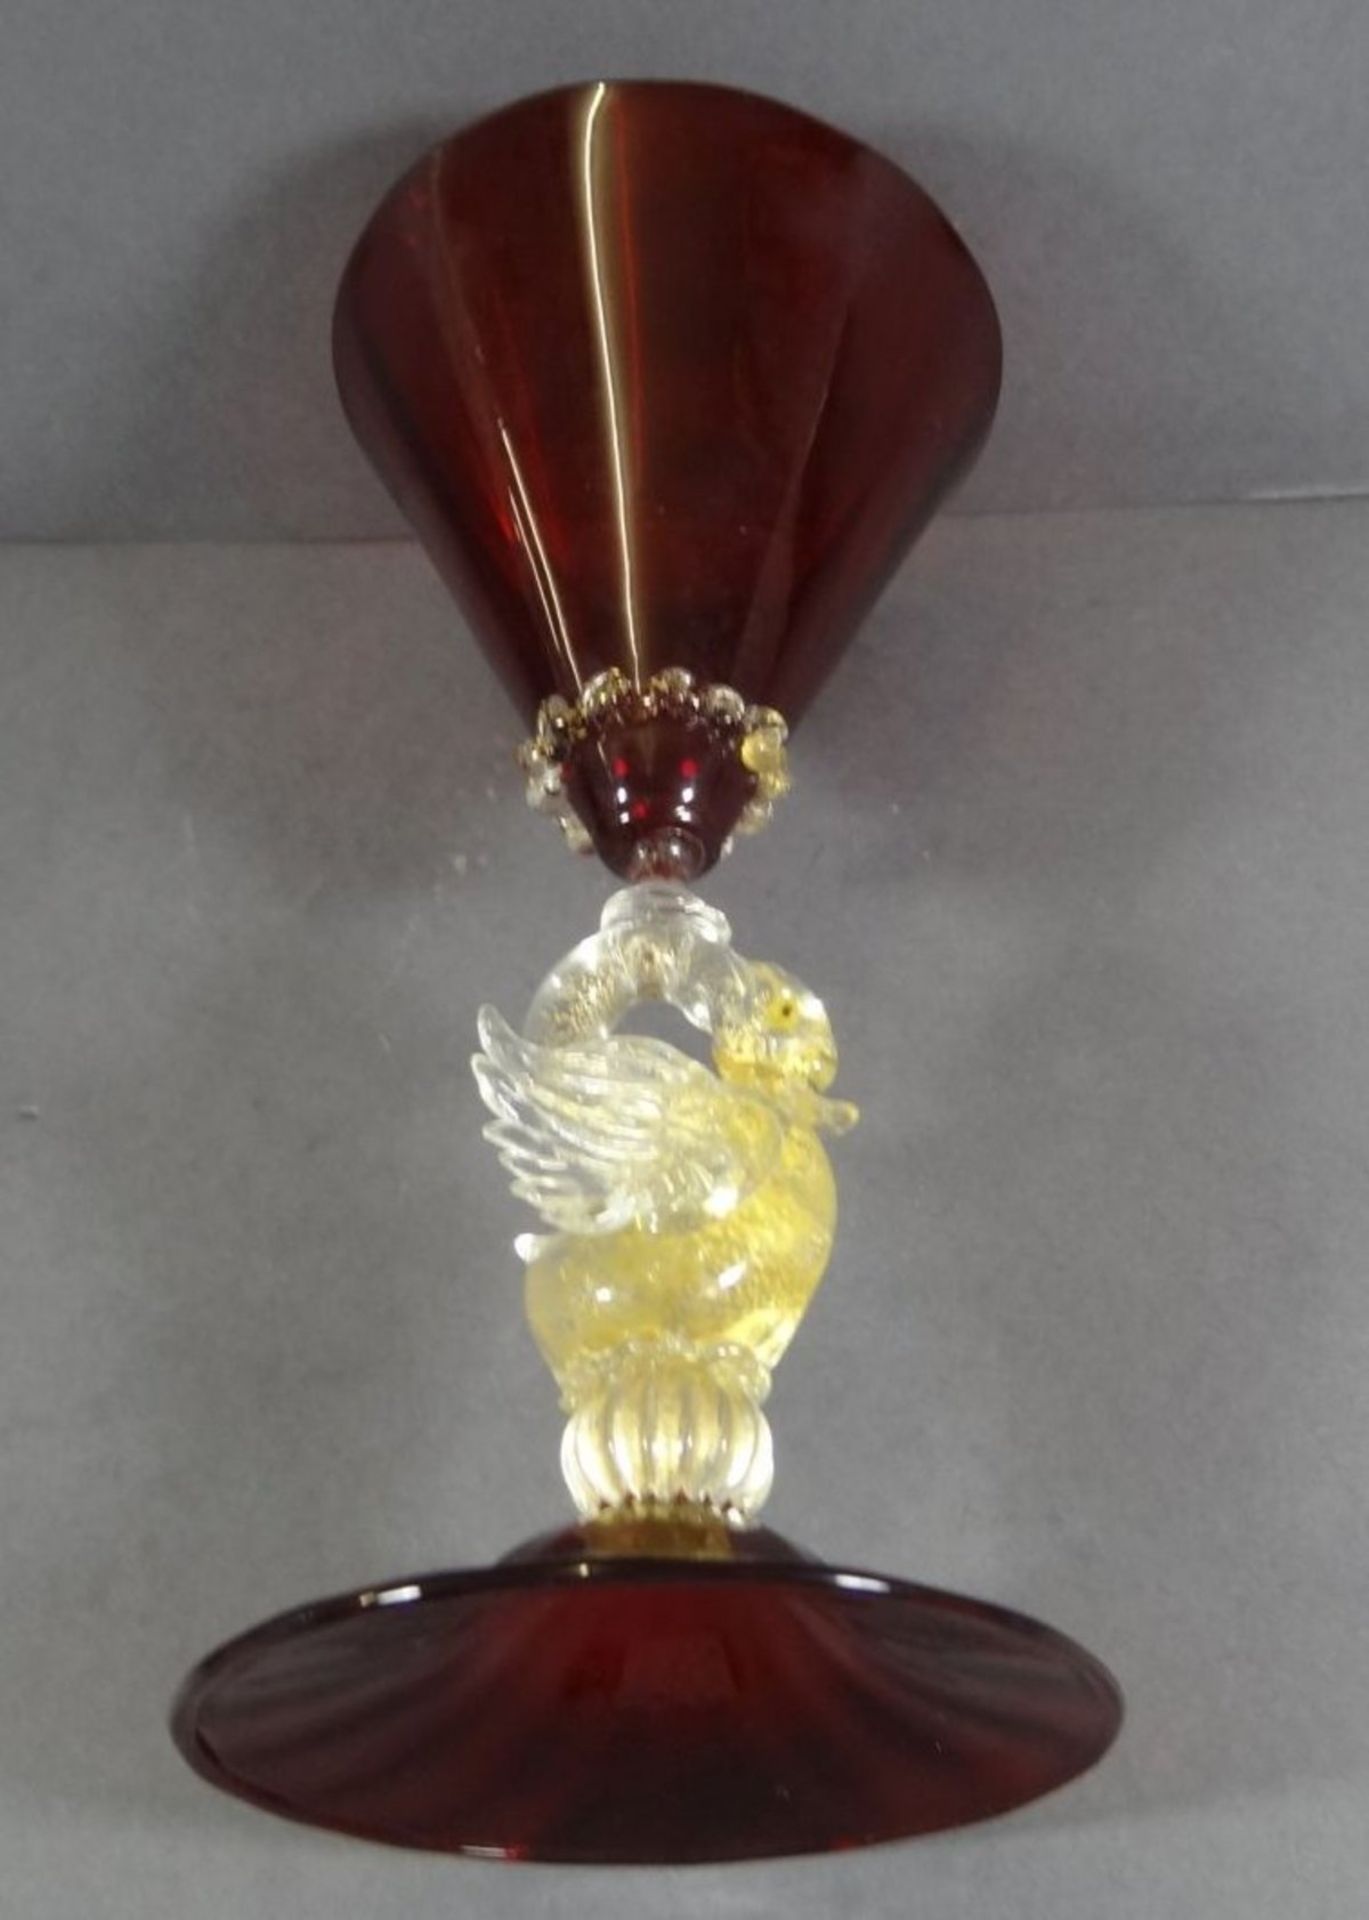 gr. Pokal "Murano" rotes Glas, Griff als Schwan, klar mit Goldflitter, H-21 cm - Bild 5 aus 6